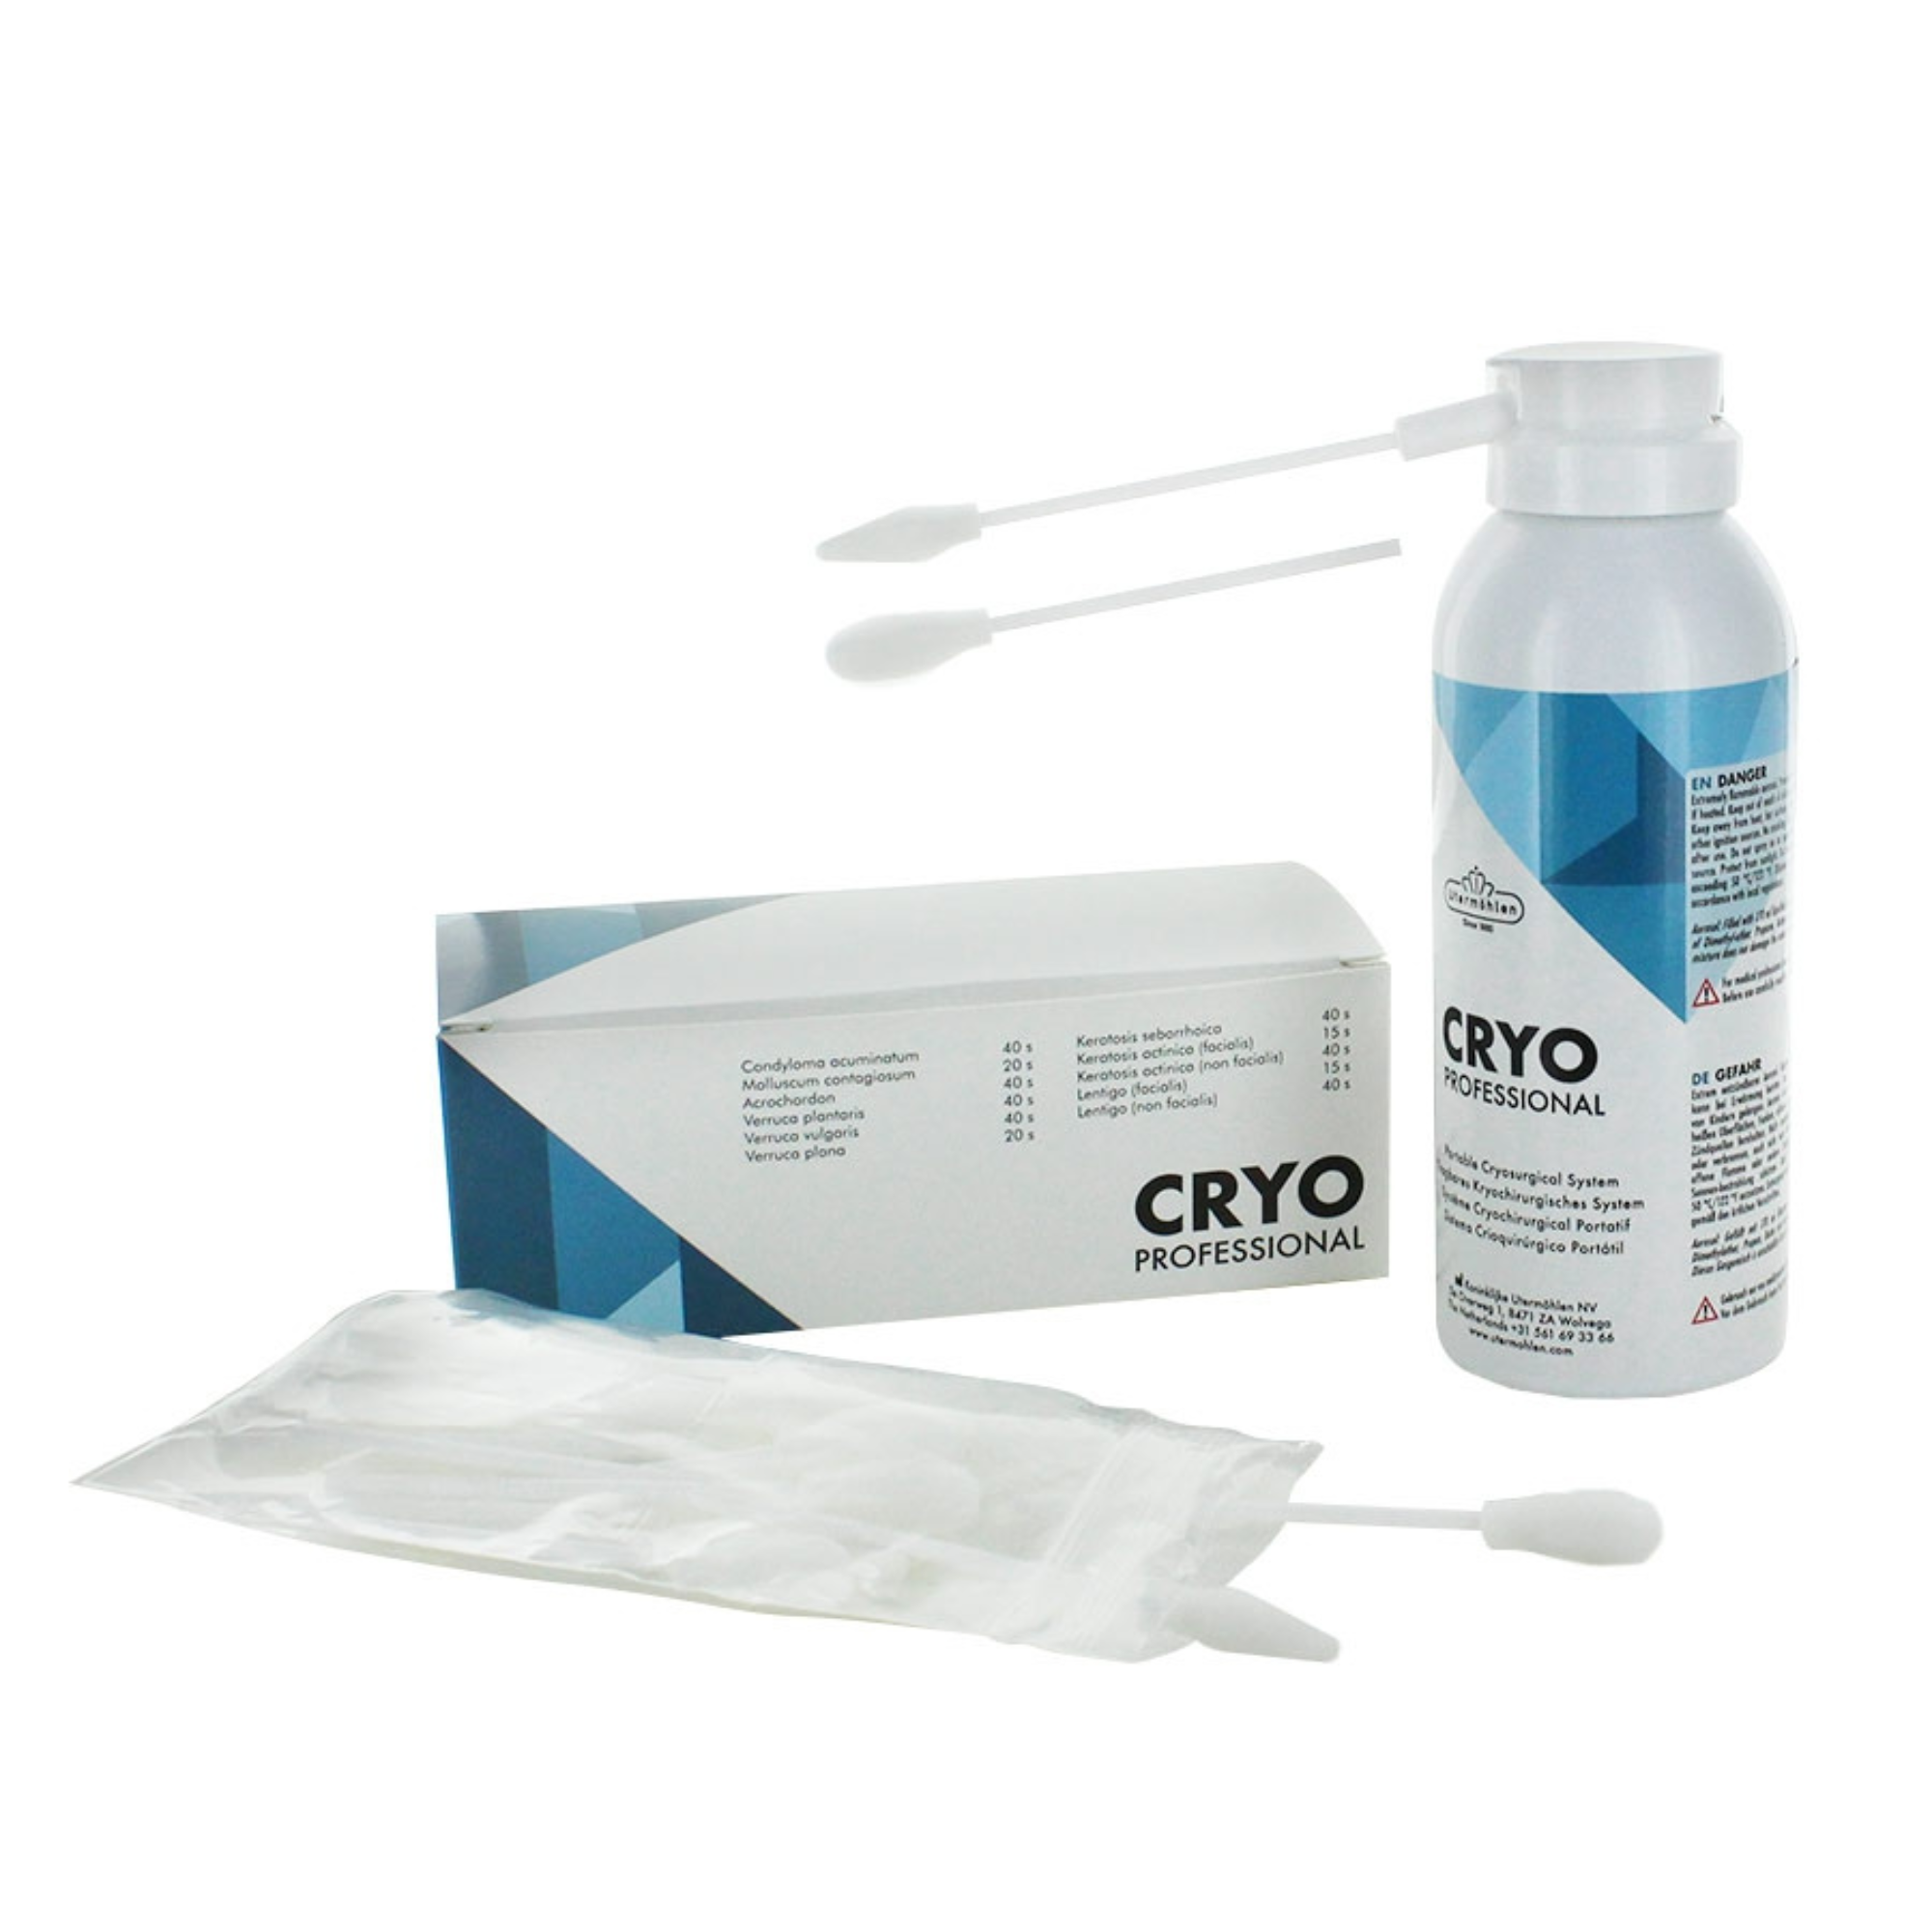 Cryo Pro pour traitement des verrues